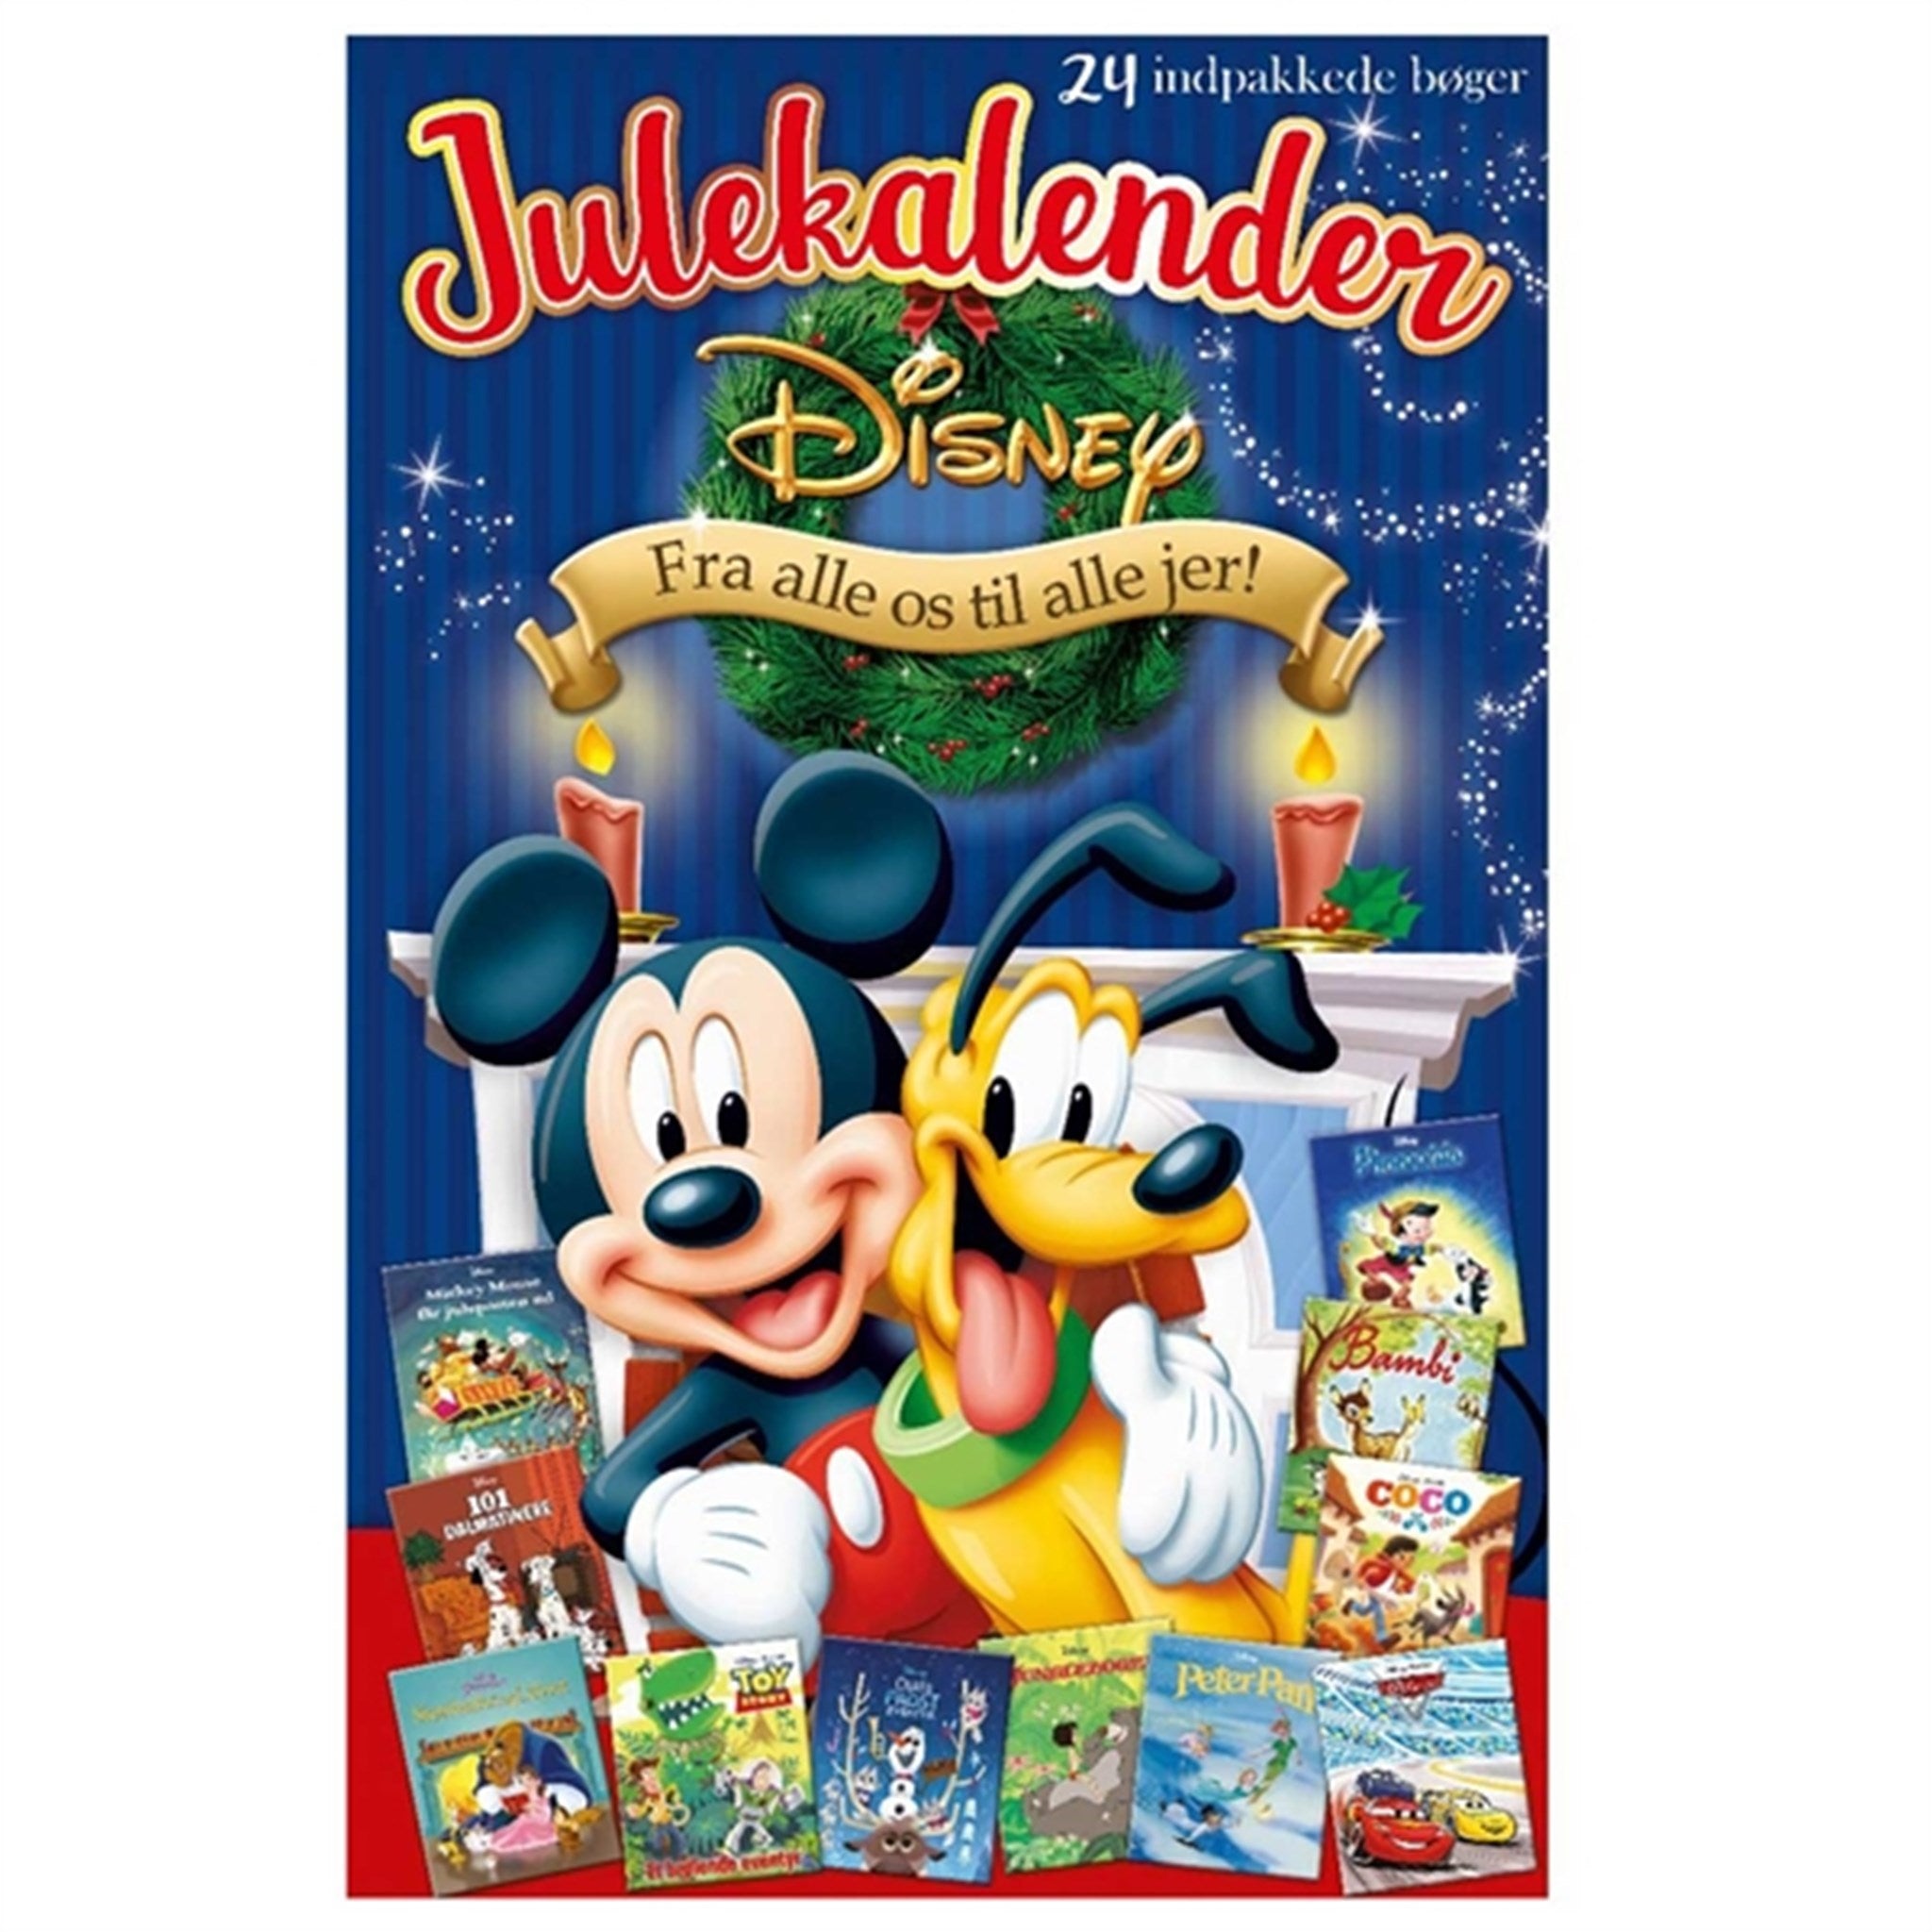 Karrusel Forlag - Disney Julekalenderbog - 24 bøger